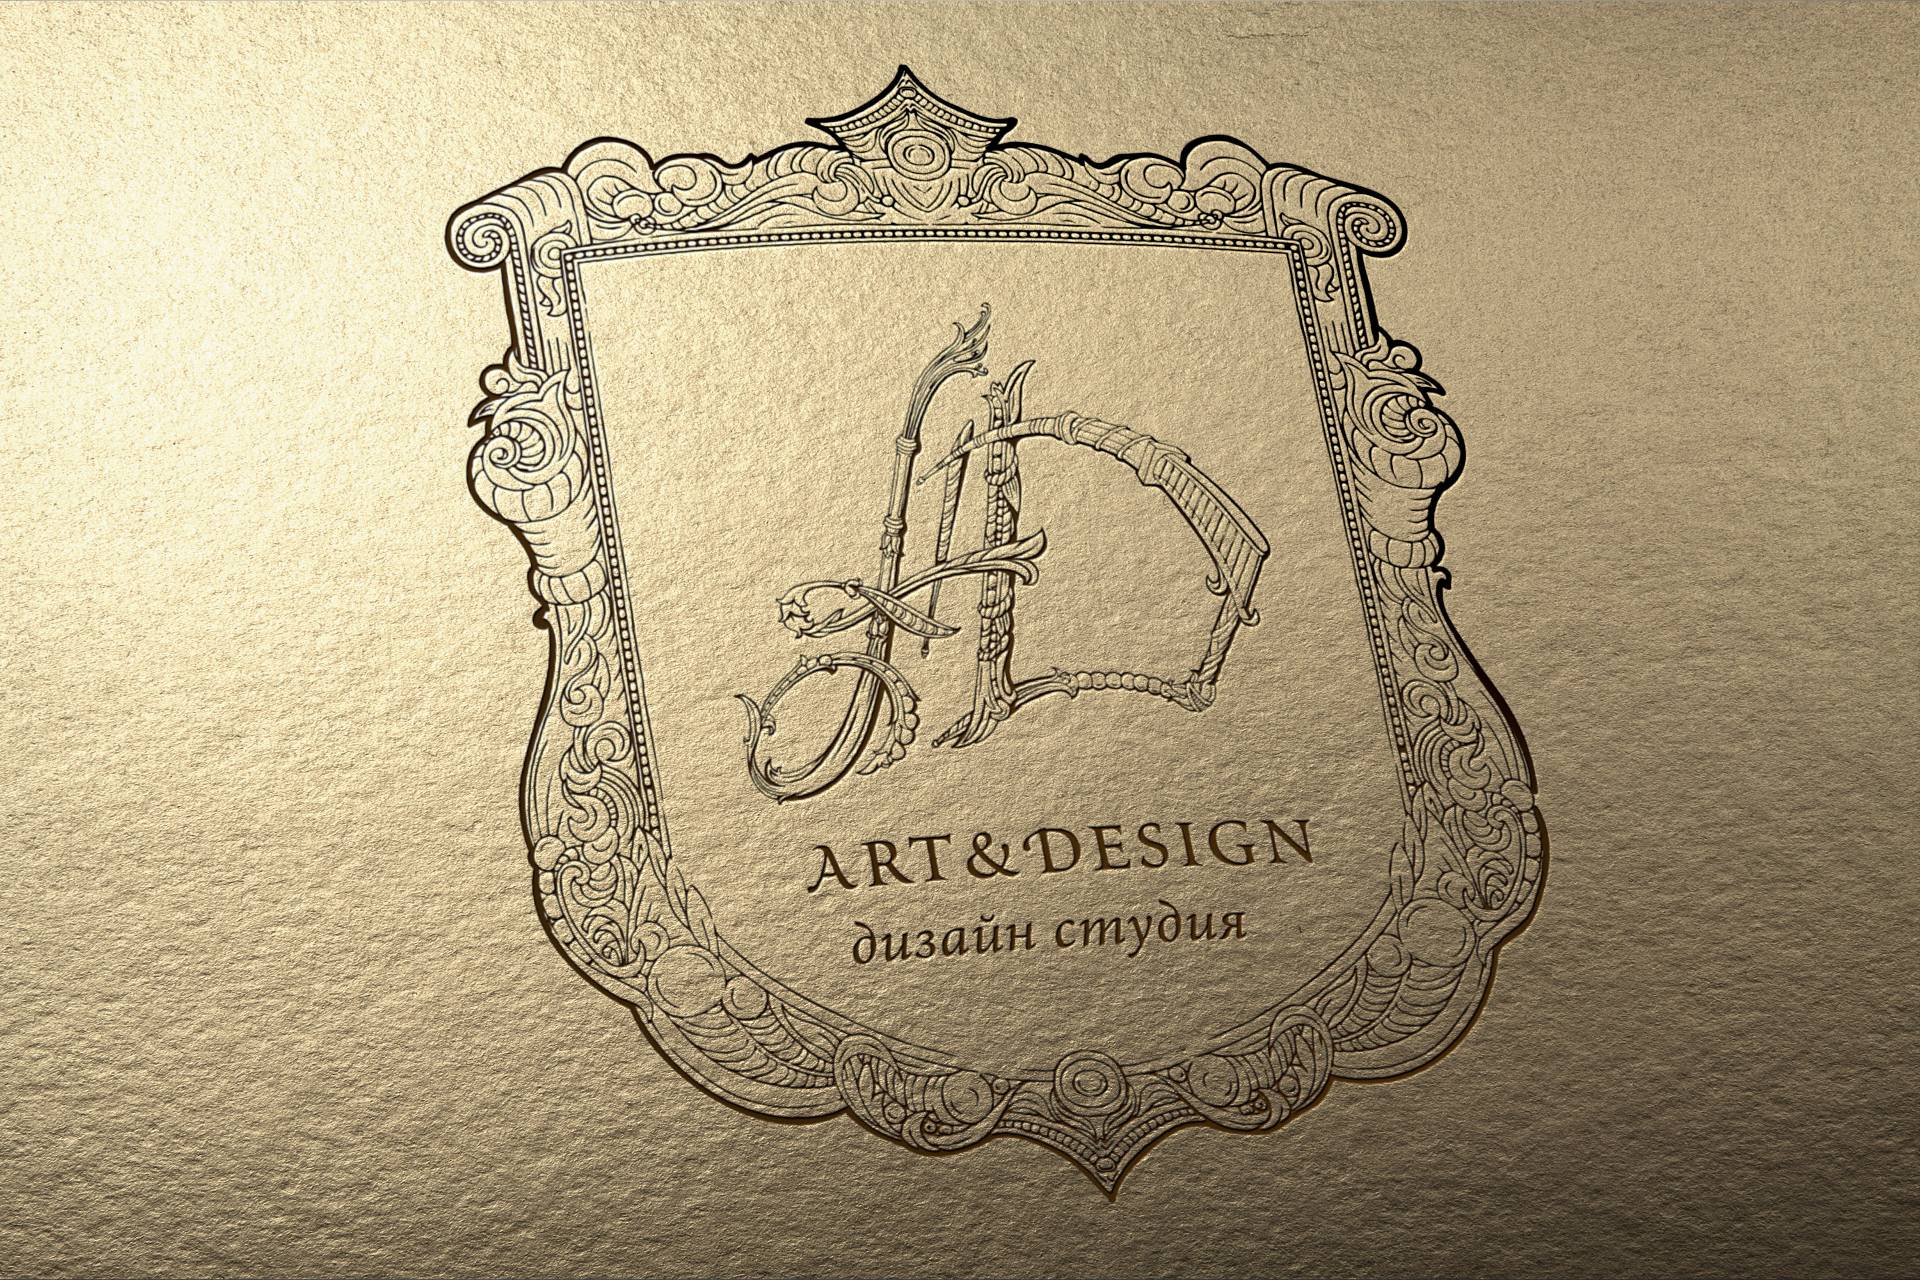 Дизайн логотипа студии архитектурного дизайна, Architecture design studio logo design